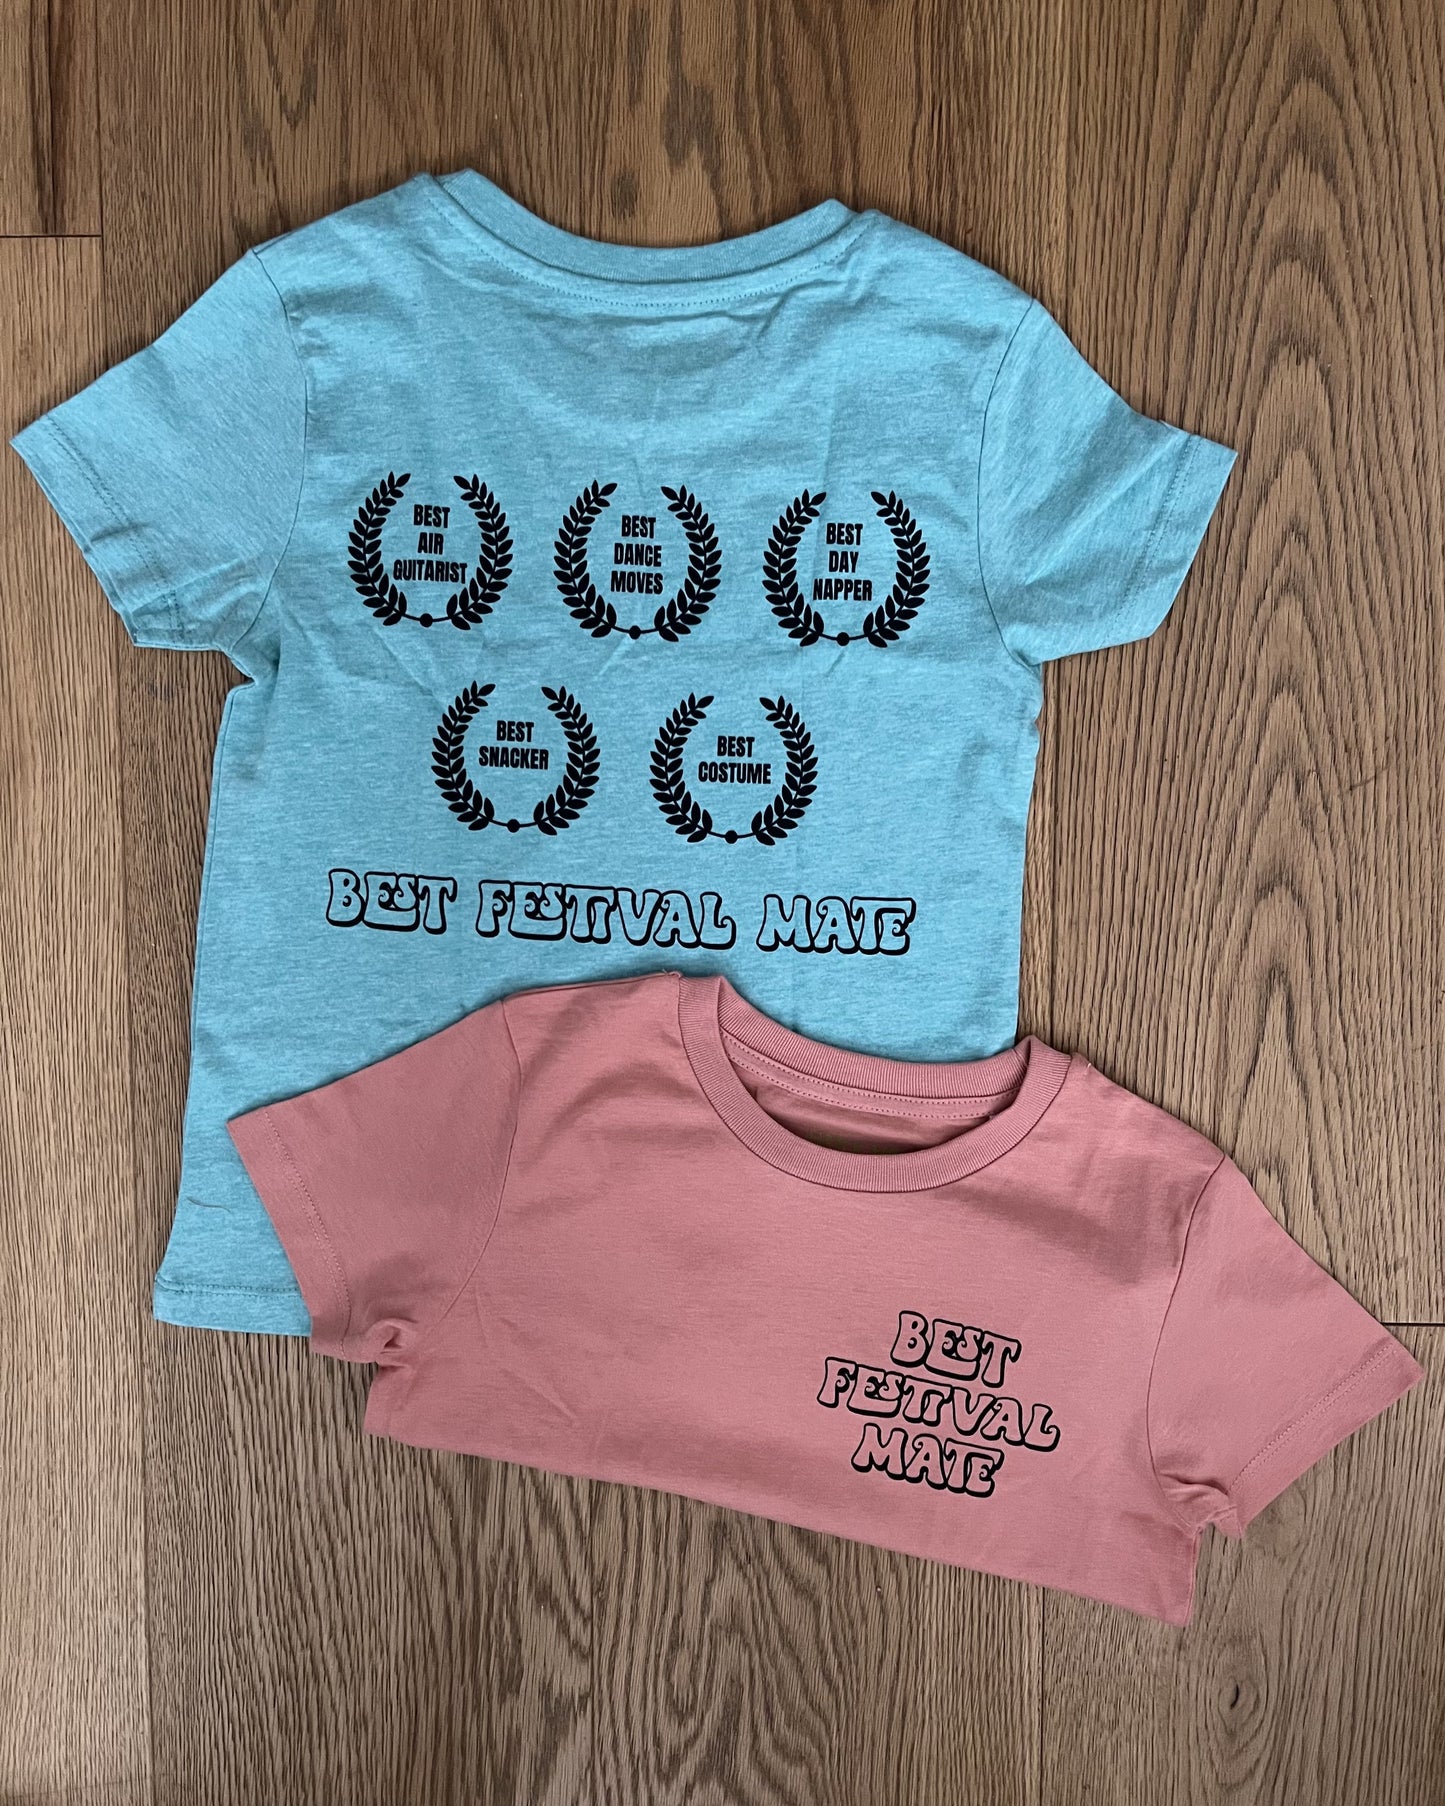 BEST FESTIVAL MATE - Organic Kids T-Shirt - Little Mate Adventures